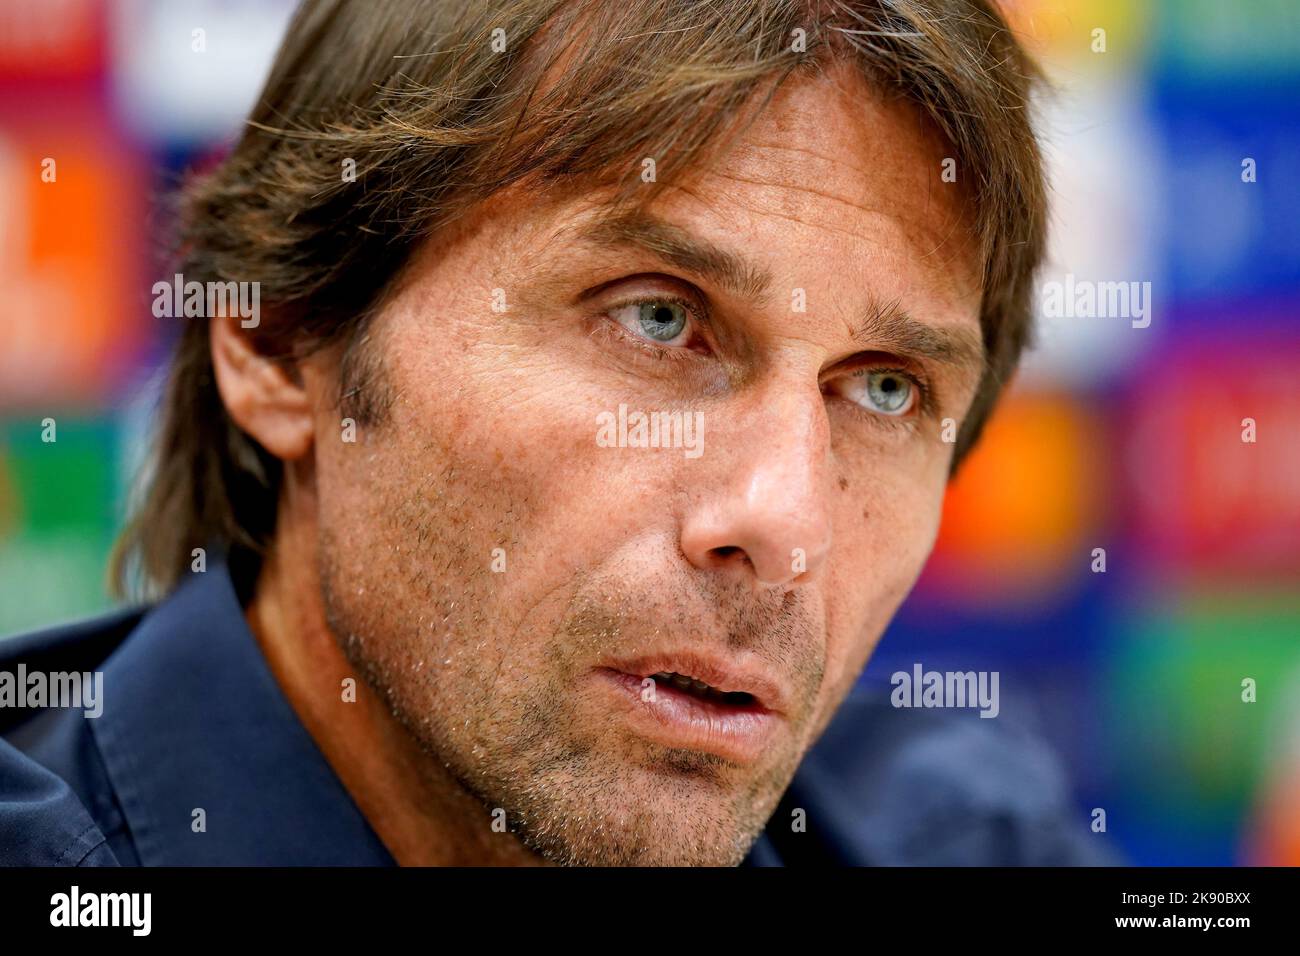 Antonio Conte, Manager von Tottenham Hotspur, während einer Pressekonferenz auf dem Trainingsgelände von Tottenham Hotspur in Enfield. Bilddatum: Dienstag, 25. Oktober 2022. Stockfoto